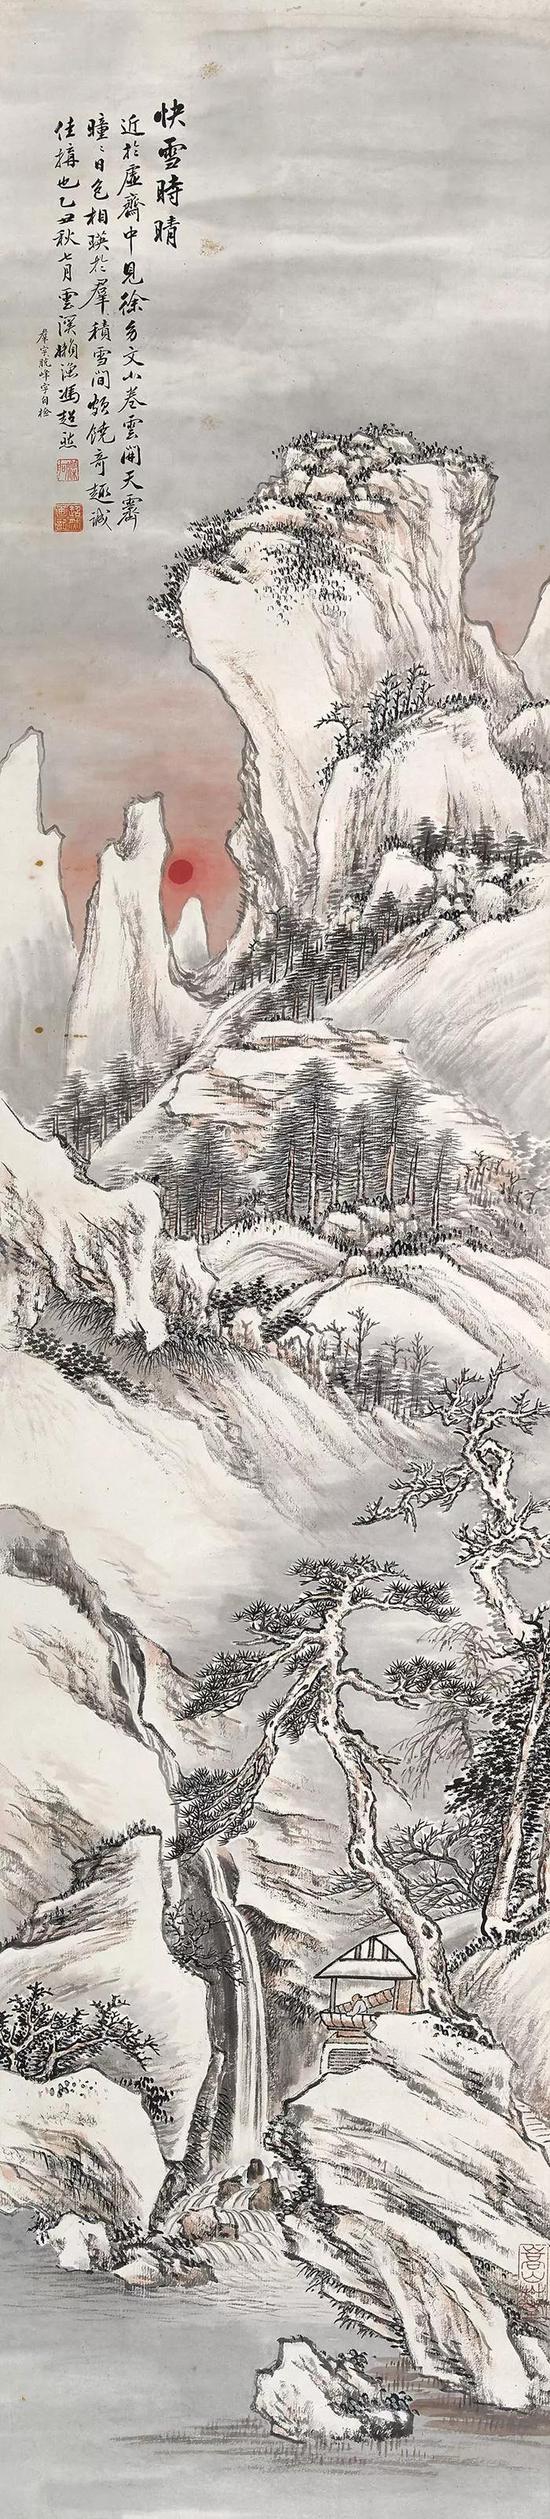 待1924年至庞莱臣家见徐幼文雪景卷，遂取其笔意补全，合此四屏，极见精心。